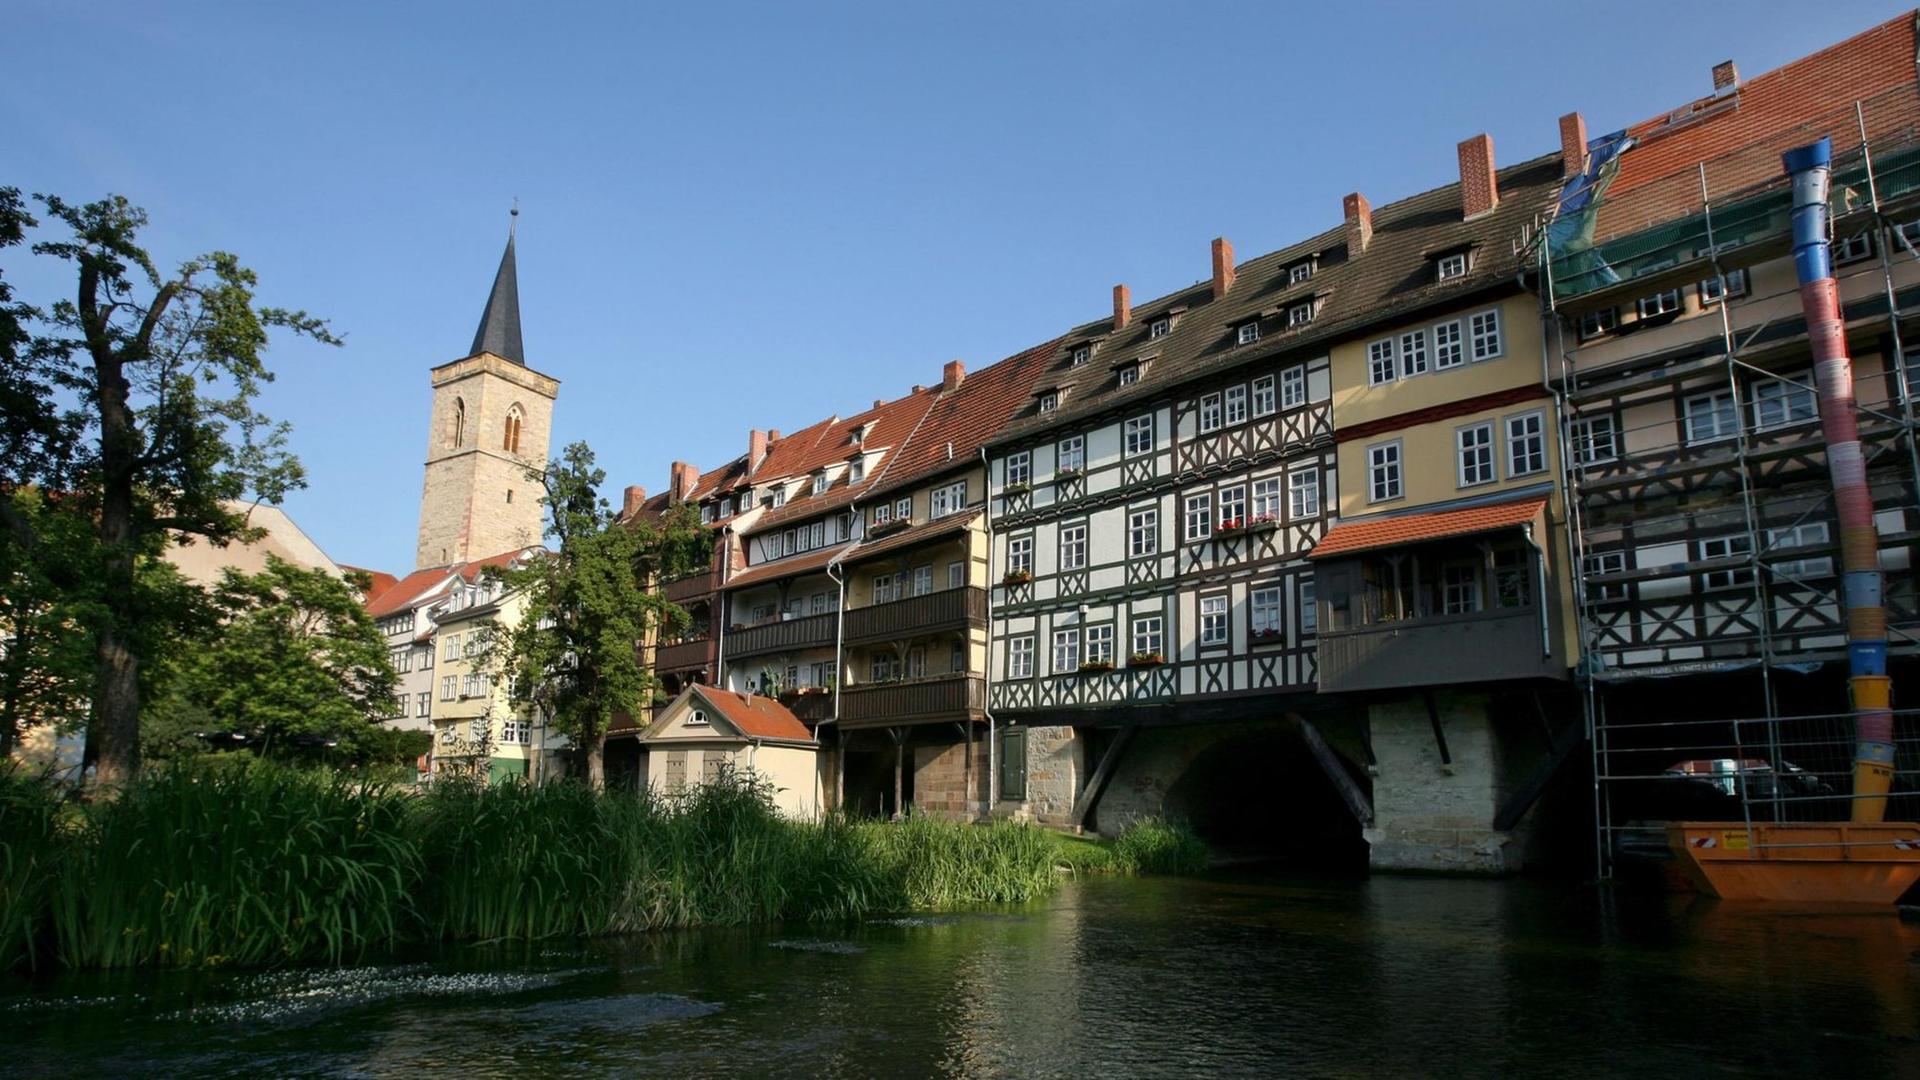 Blick auf die Krämerbrücke in Erfurt mit ihren alten Fachwerkhäusern.